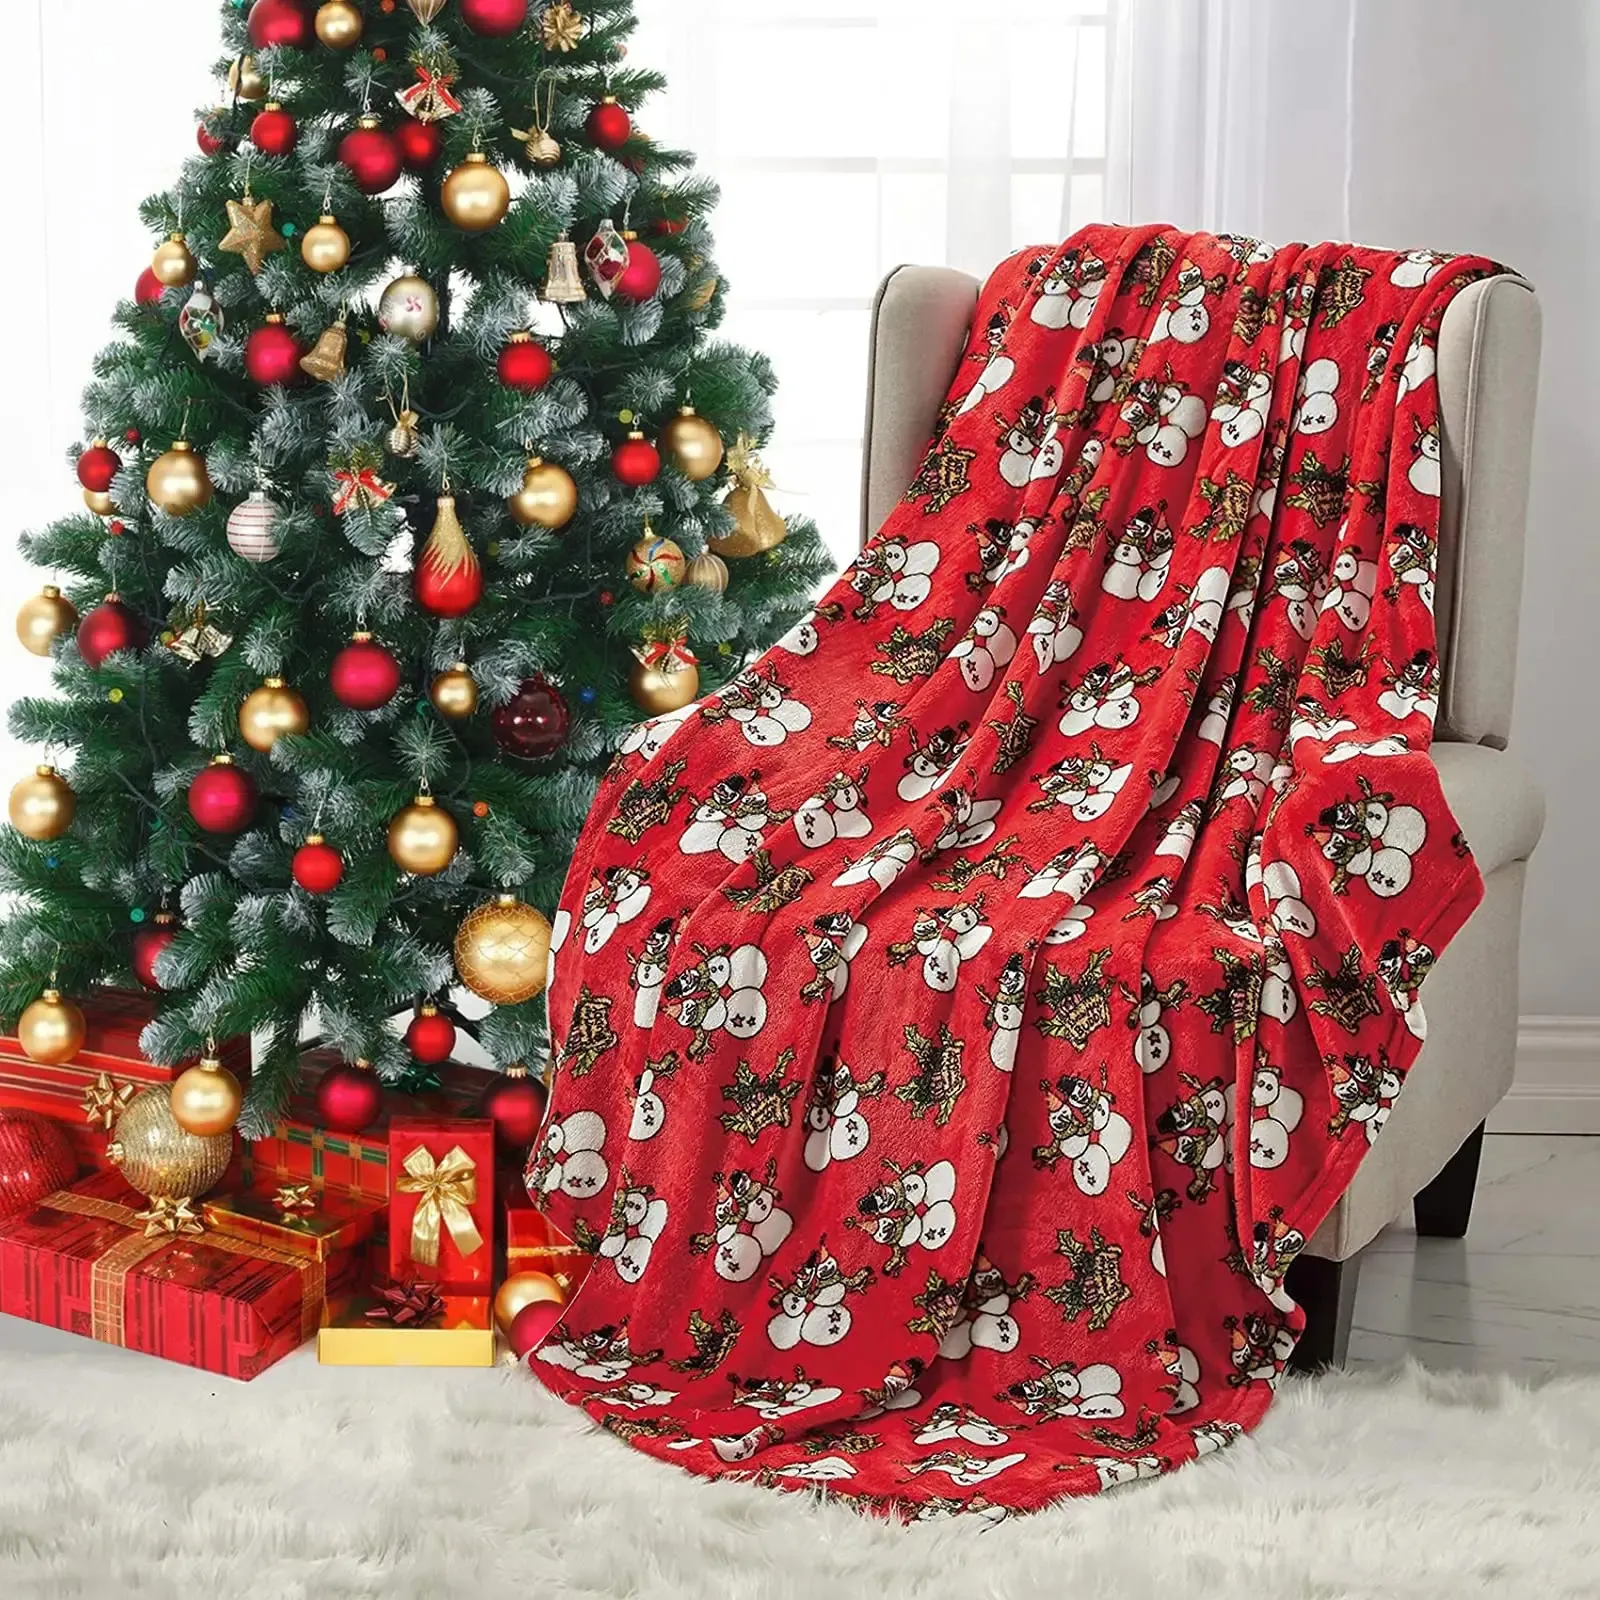 Koce świąteczne świąteczne rzucanie koc czerwony koc świąteczny miękki pluszowy zimowy rzut kabiną